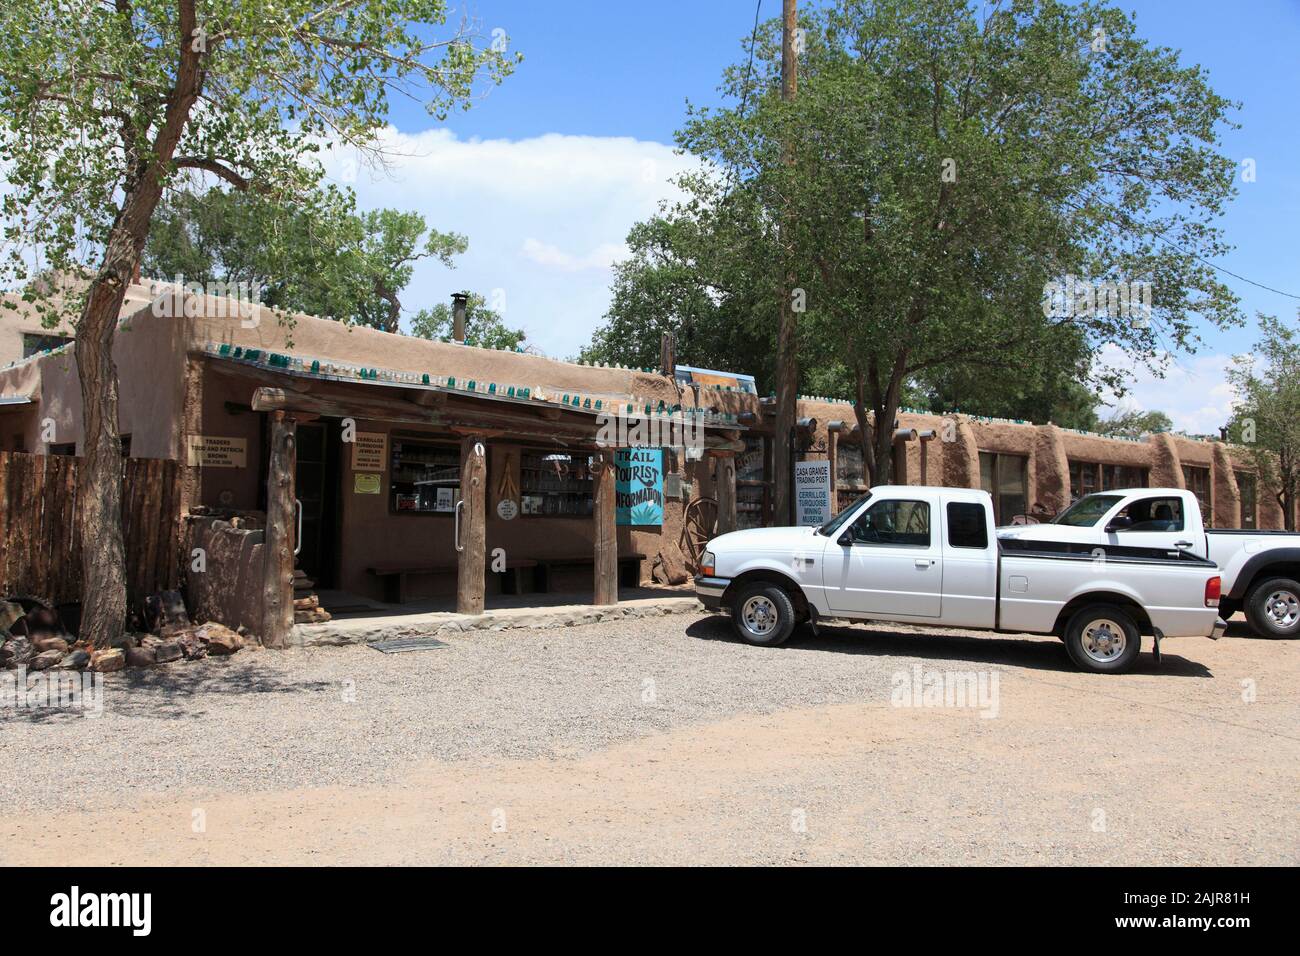 Casa Grande Poste de traite et d'exploitation minière Turquoise Cerrillos Cerrillos, musée, ancienne cité minière, la Turquoise Trail, New Mexico, USA Banque D'Images